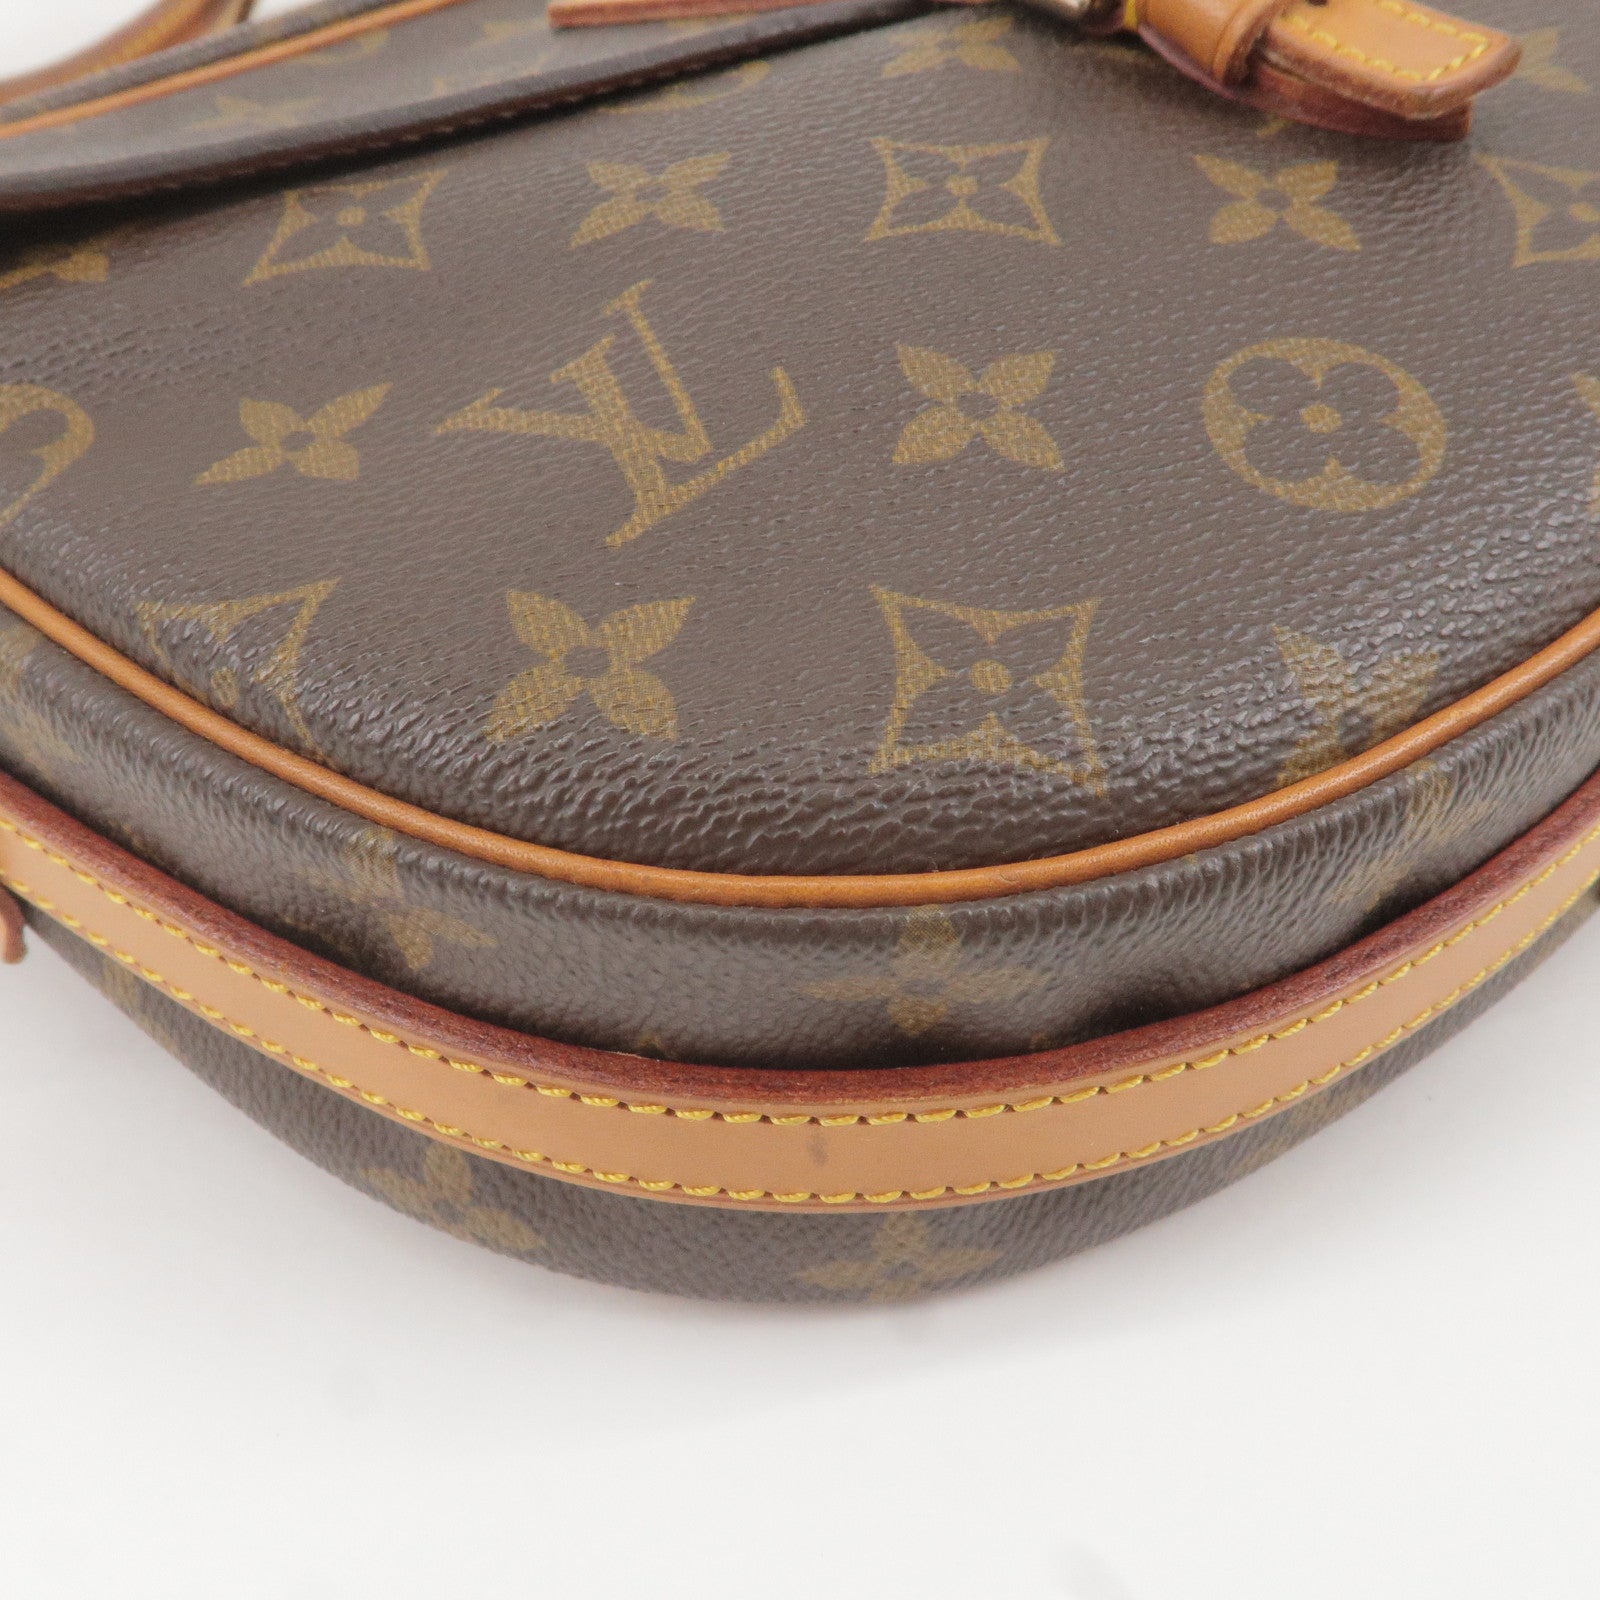 Louis Vuitton 2000 pre-owned Papillon 30 handbag, Brown